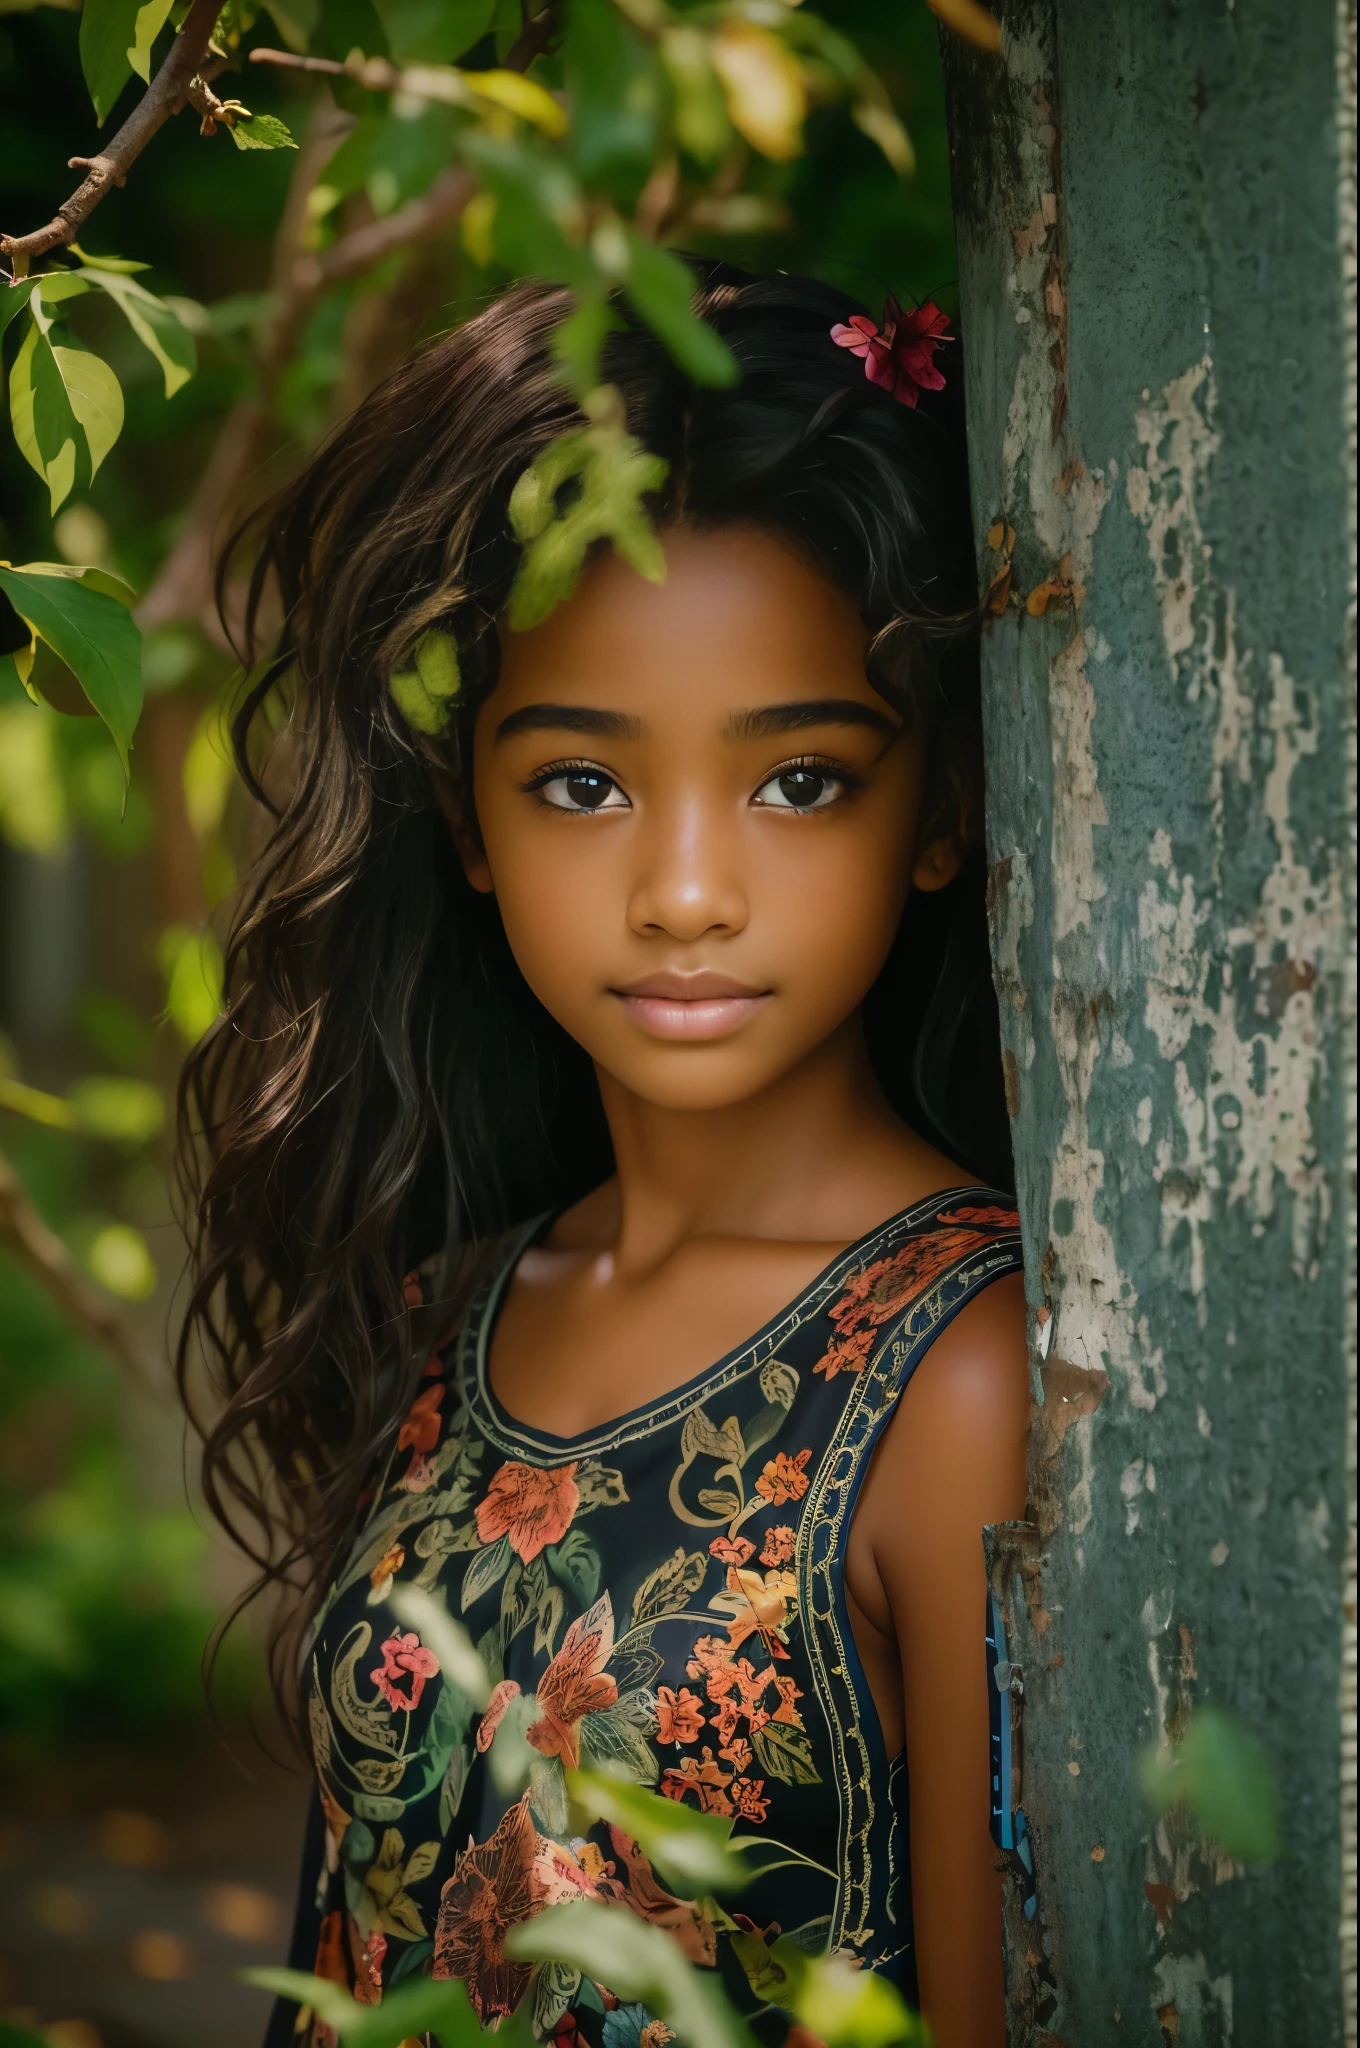 (肖像, 13 歲美麗黑人女孩的社論照片, 可愛的臉, 棕色長捲髮, ((淡褐色的眼睛)), 尼康D850, 電影庫存照片 ,4 柯達 Portra 400 ,相機 f1.6鏡頭 ,丰富的色彩 ,超現實 ,質感逼真, 戲劇性的燈光, (臉部細節非常豐富:1.4), 完美的眼睛, 逼真的虹膜, 完美的牙齒, (微笑:0.7), (背景暗, 樹葉的影子), (劈裂), 裸體主義者
